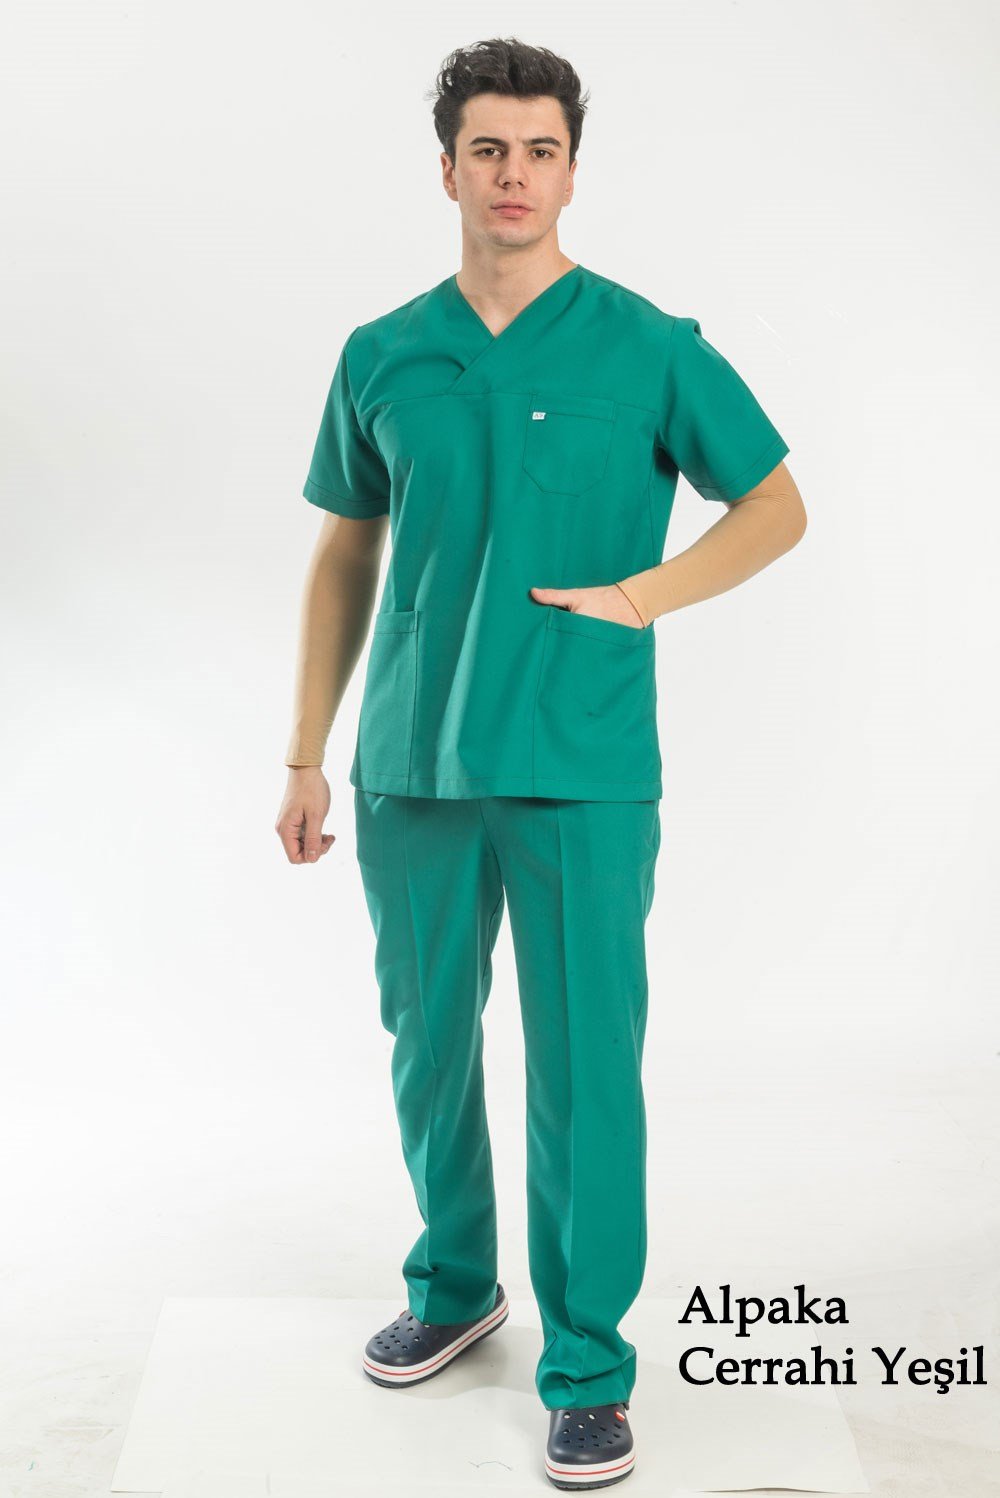 Yeşil renkli Scrubs, Yeşil renkli Doktor Kıyafeti, Yeşil Nöbet takımı